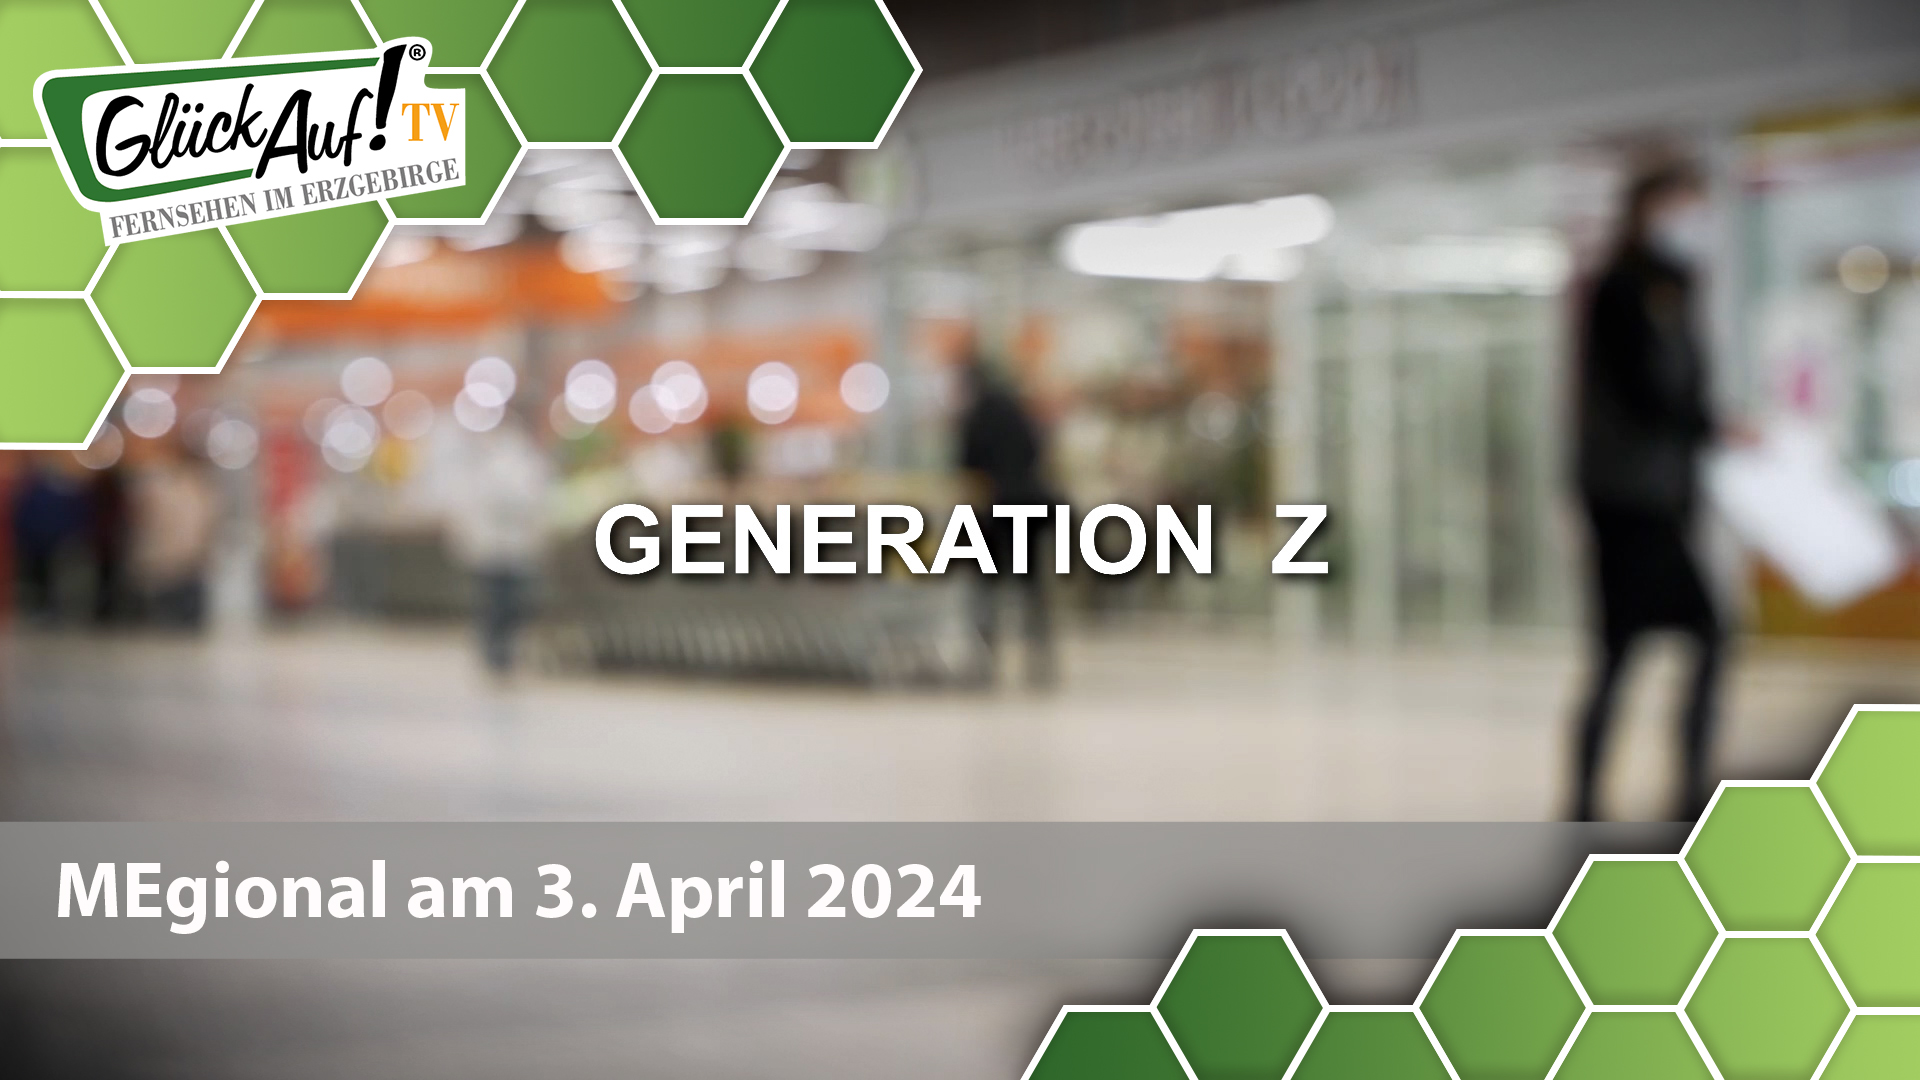 MEgional am 03. April 2024 mit der Generation Z und Boomer